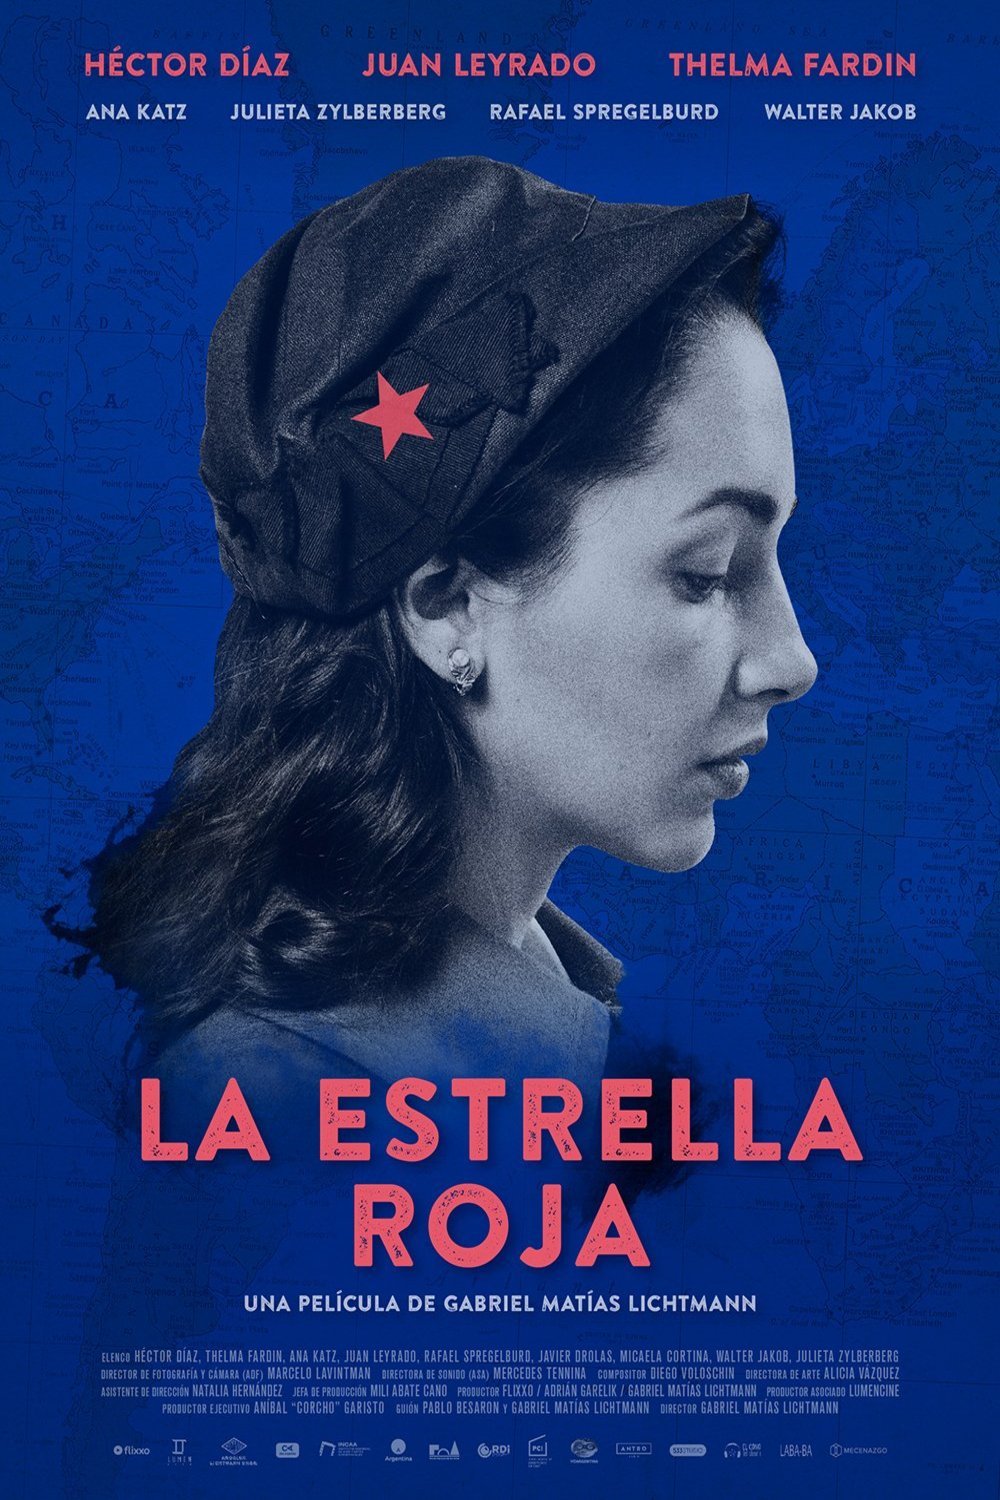 Spanish poster of the movie La estrella roja